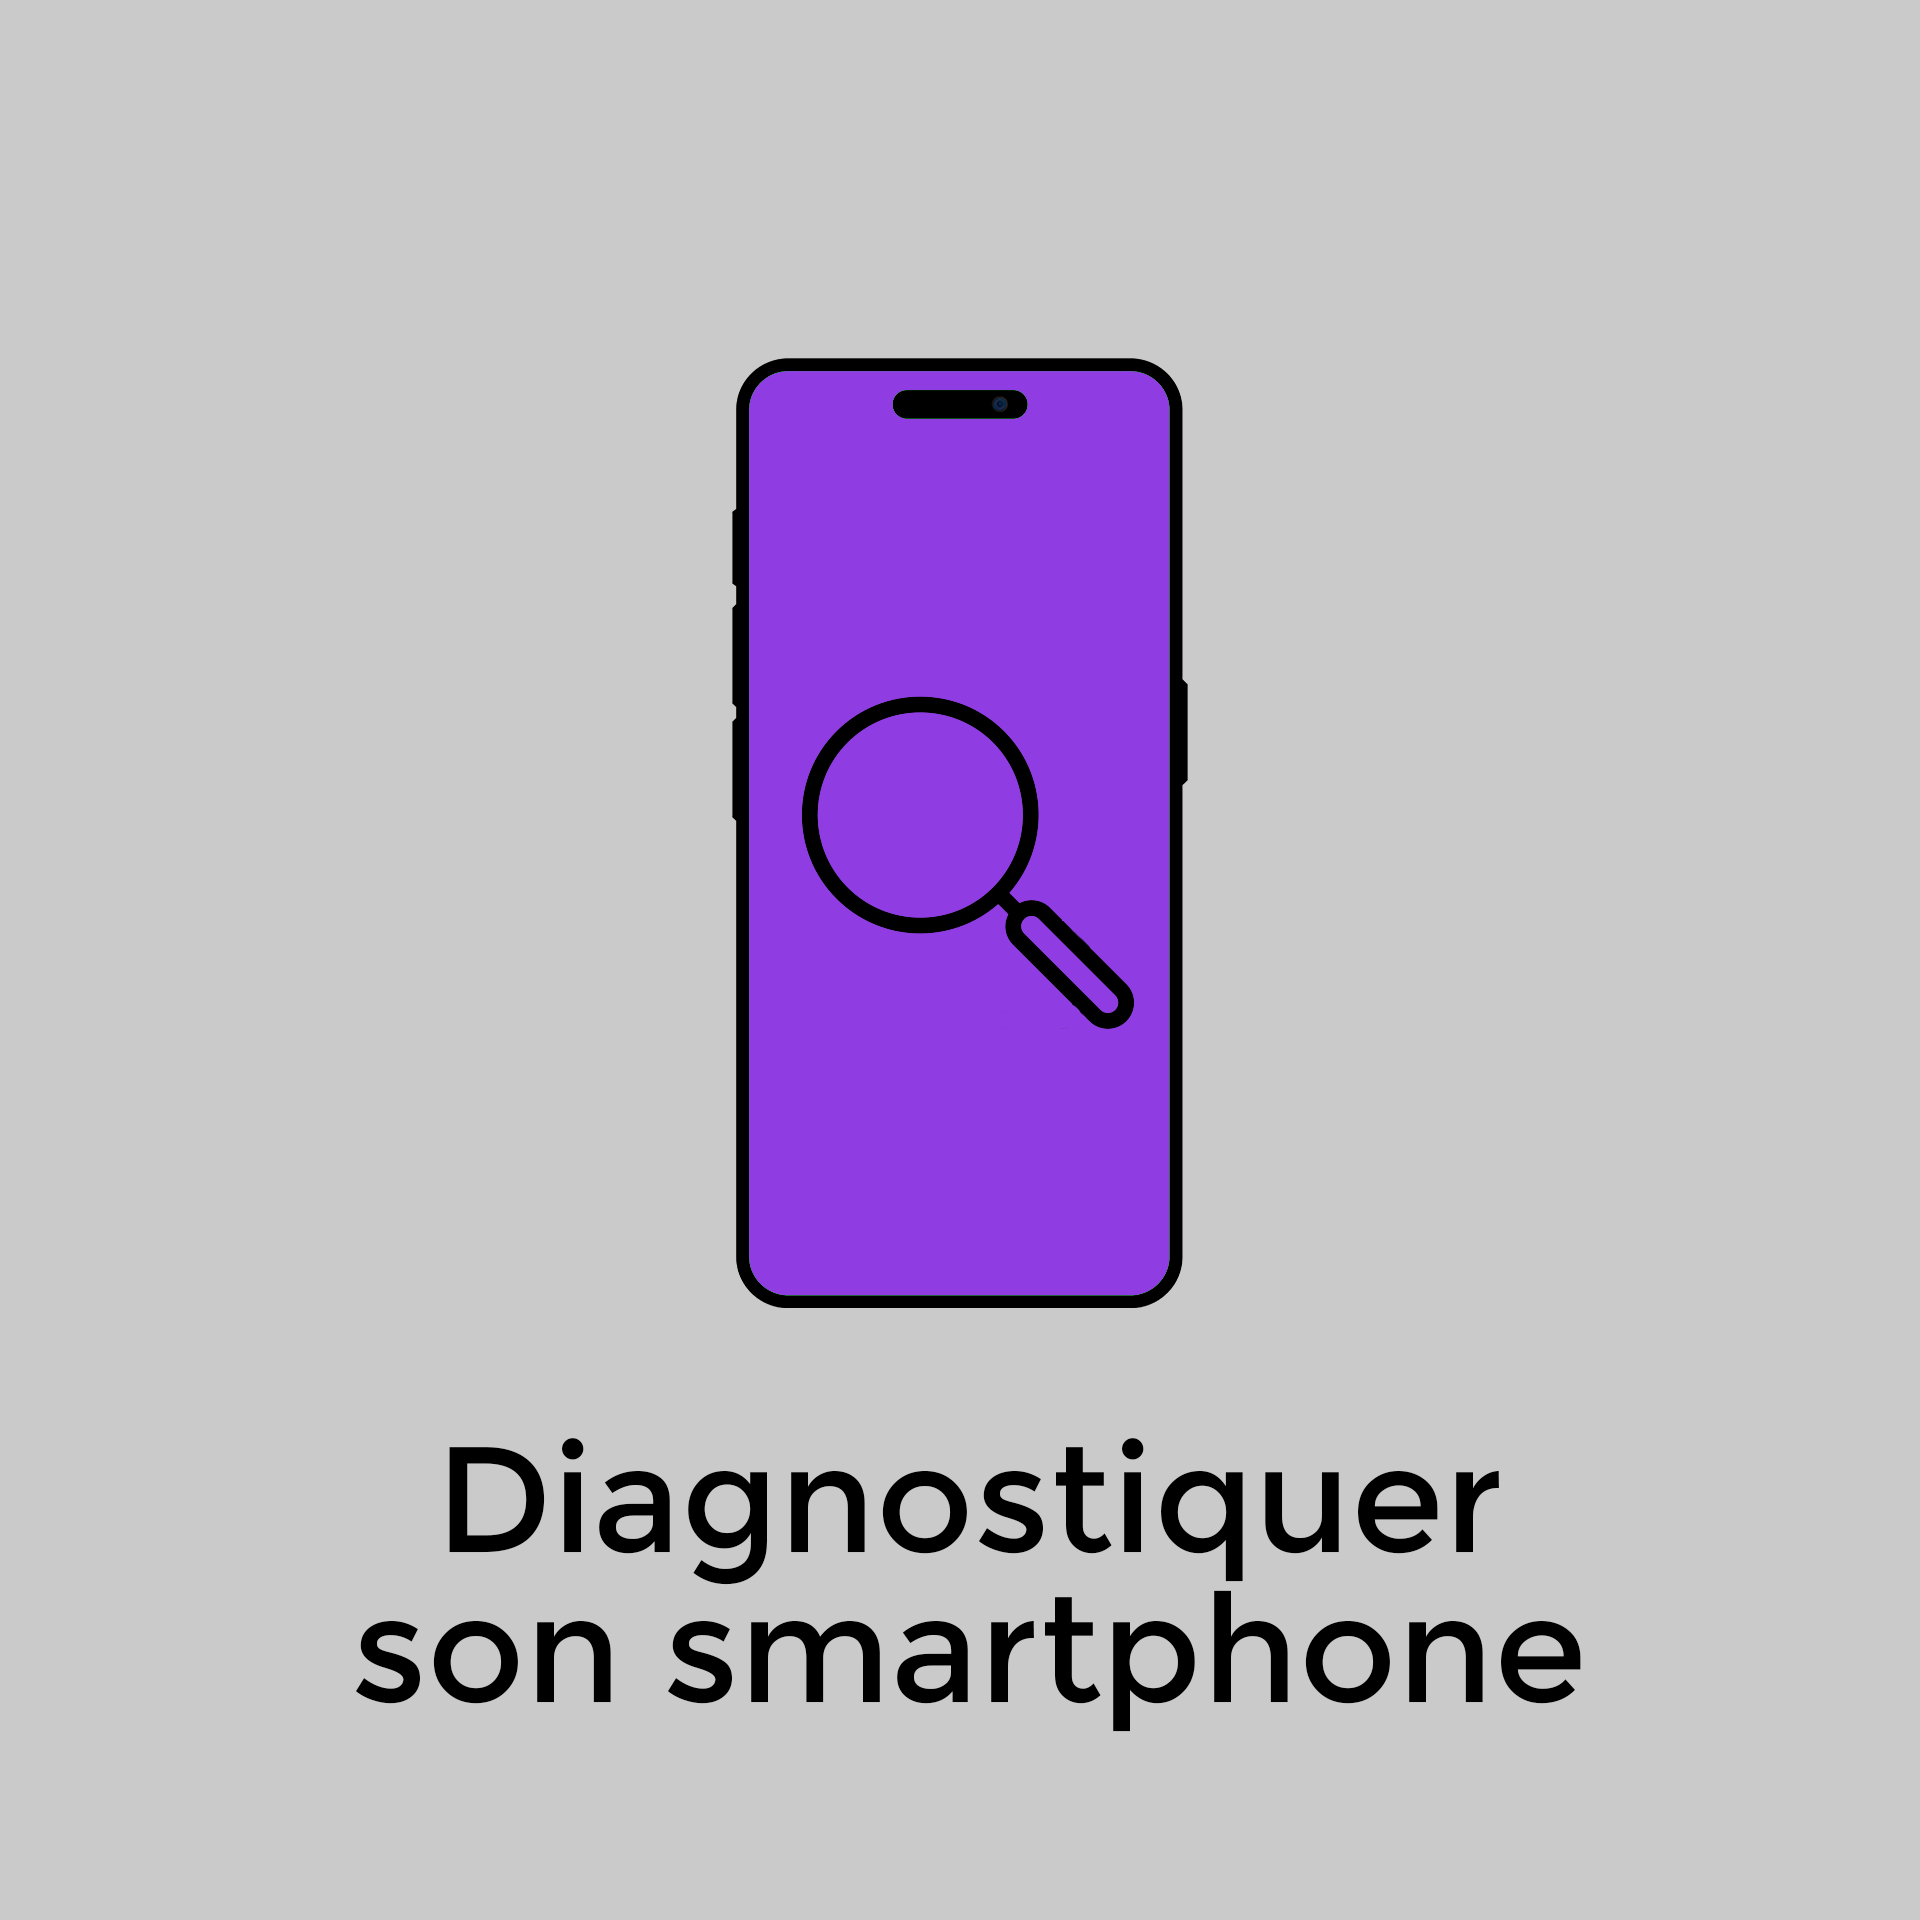 Diagnostiquer son smartphone